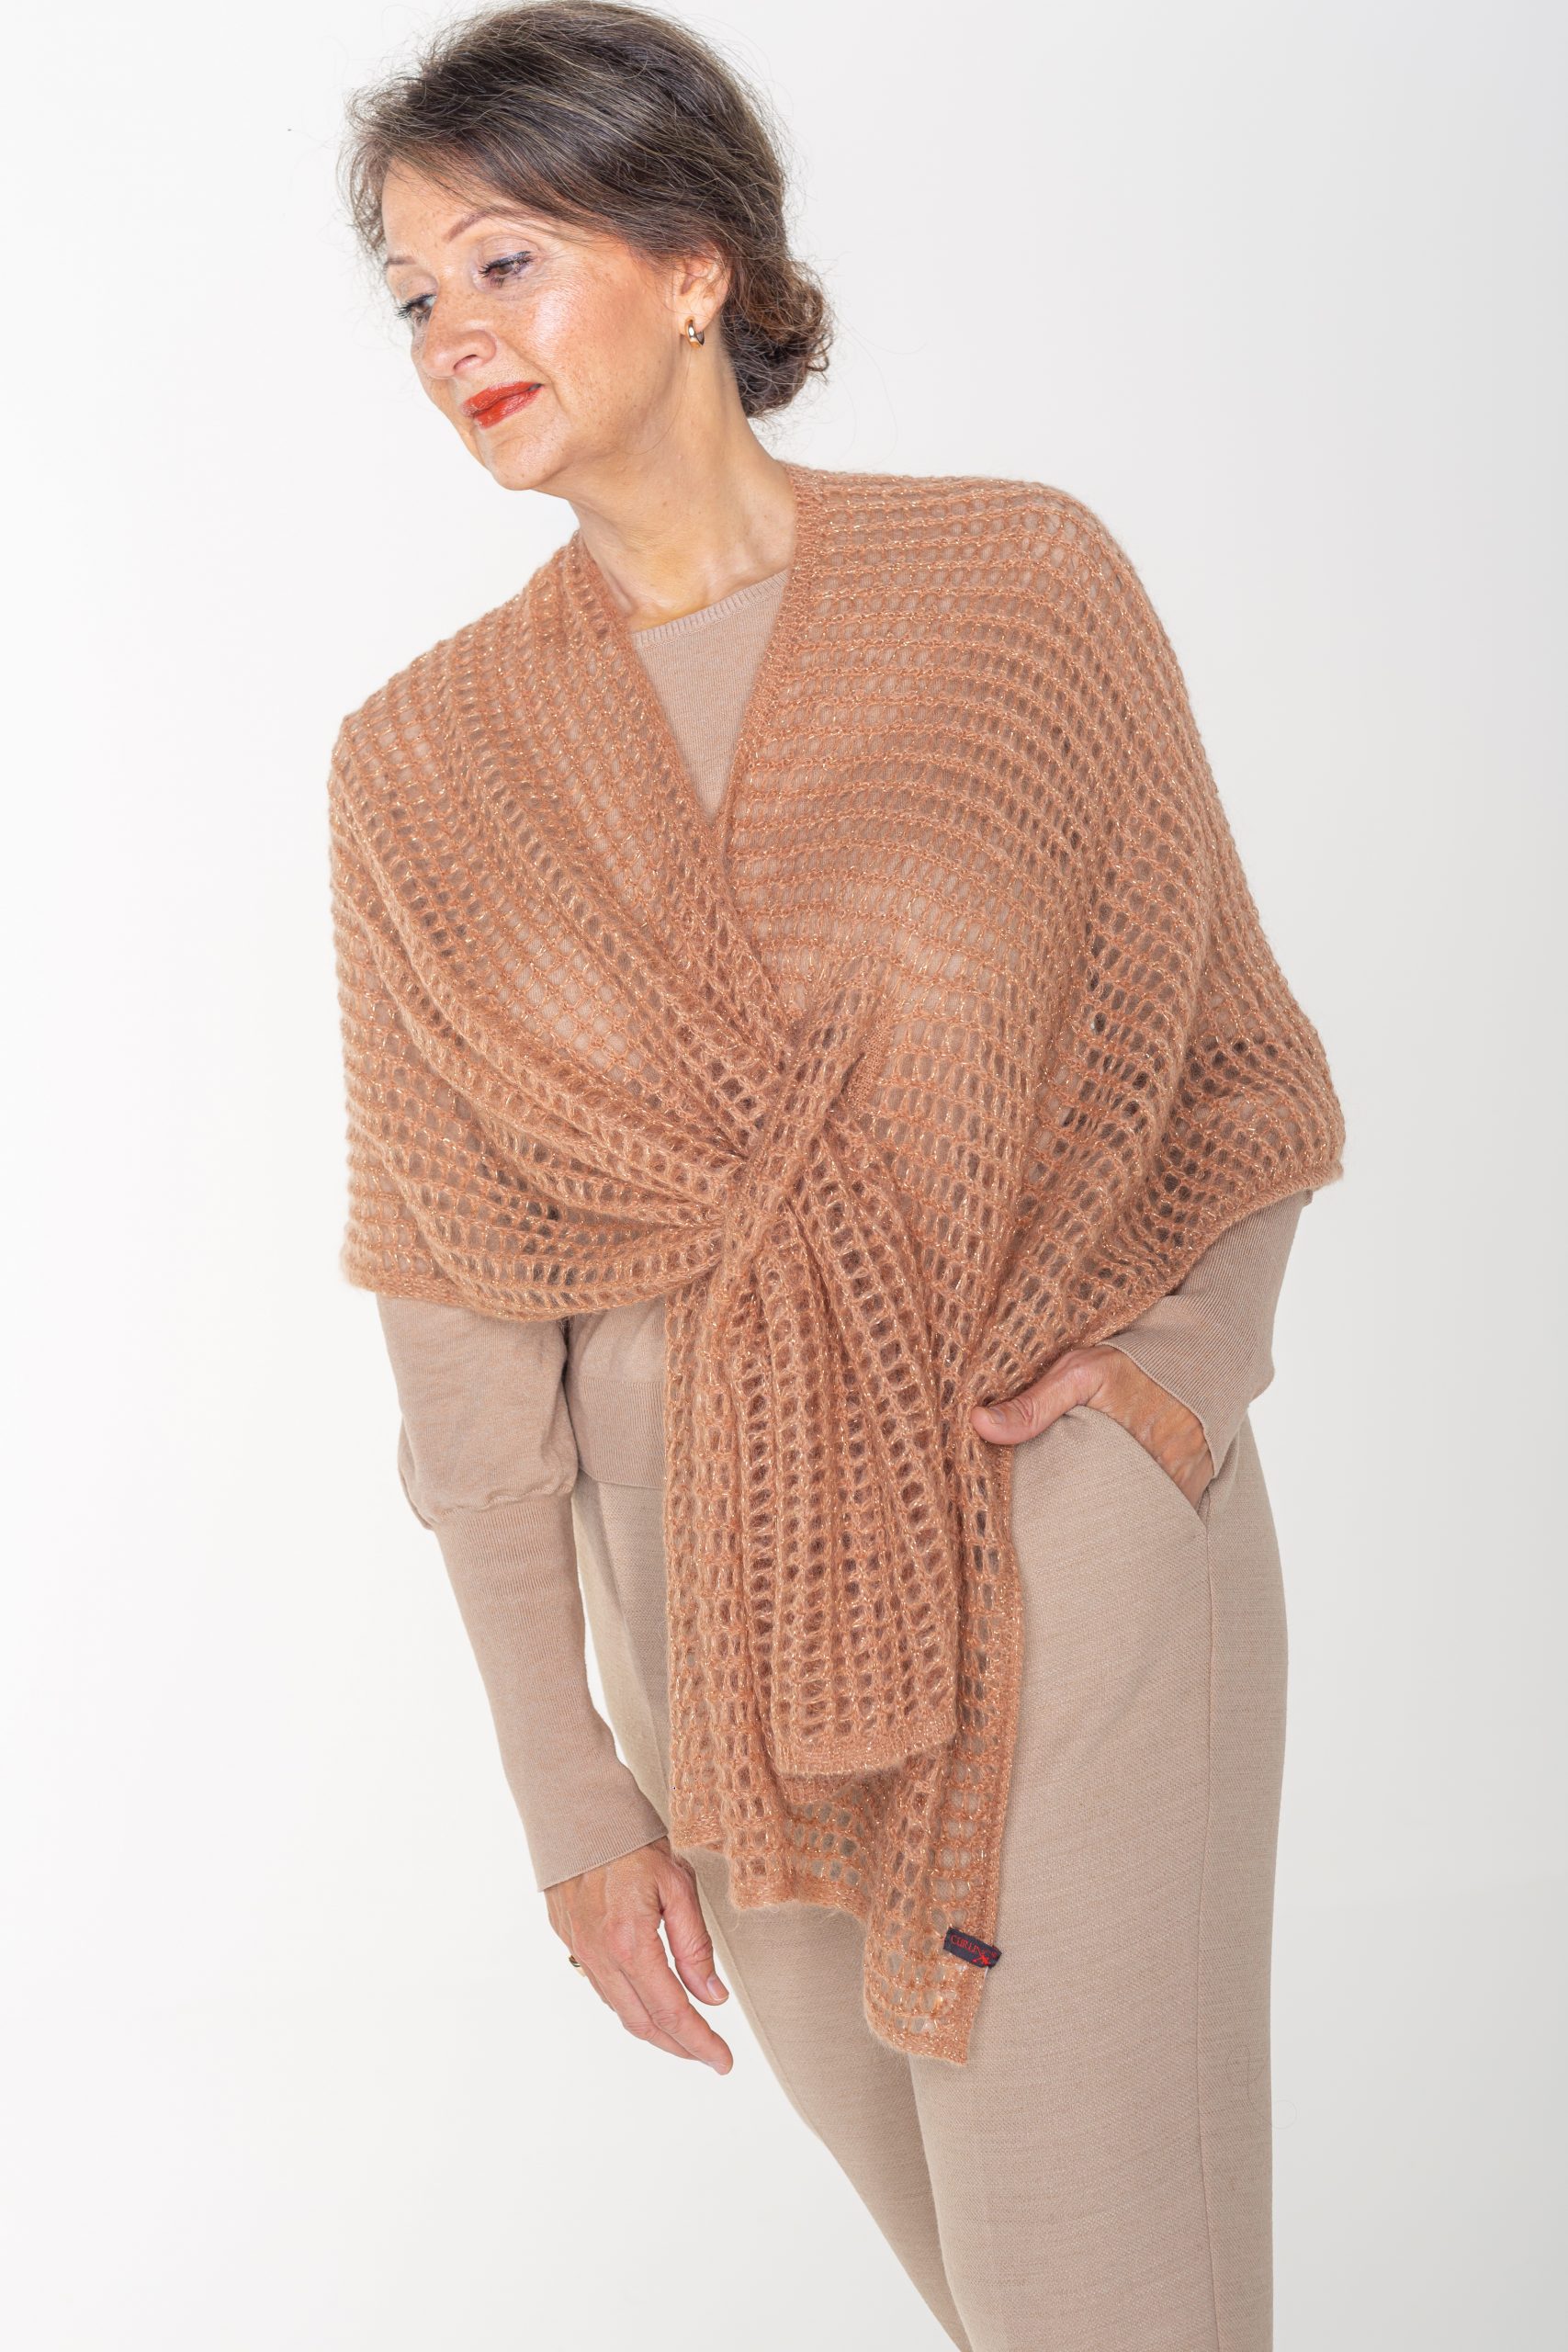 Moeras Illusie Afhankelijk Omslagdoek, opengewerkt mohair, cognac/camel, met gouddraad - Lynda Ann  Exclusive Italian knitwear